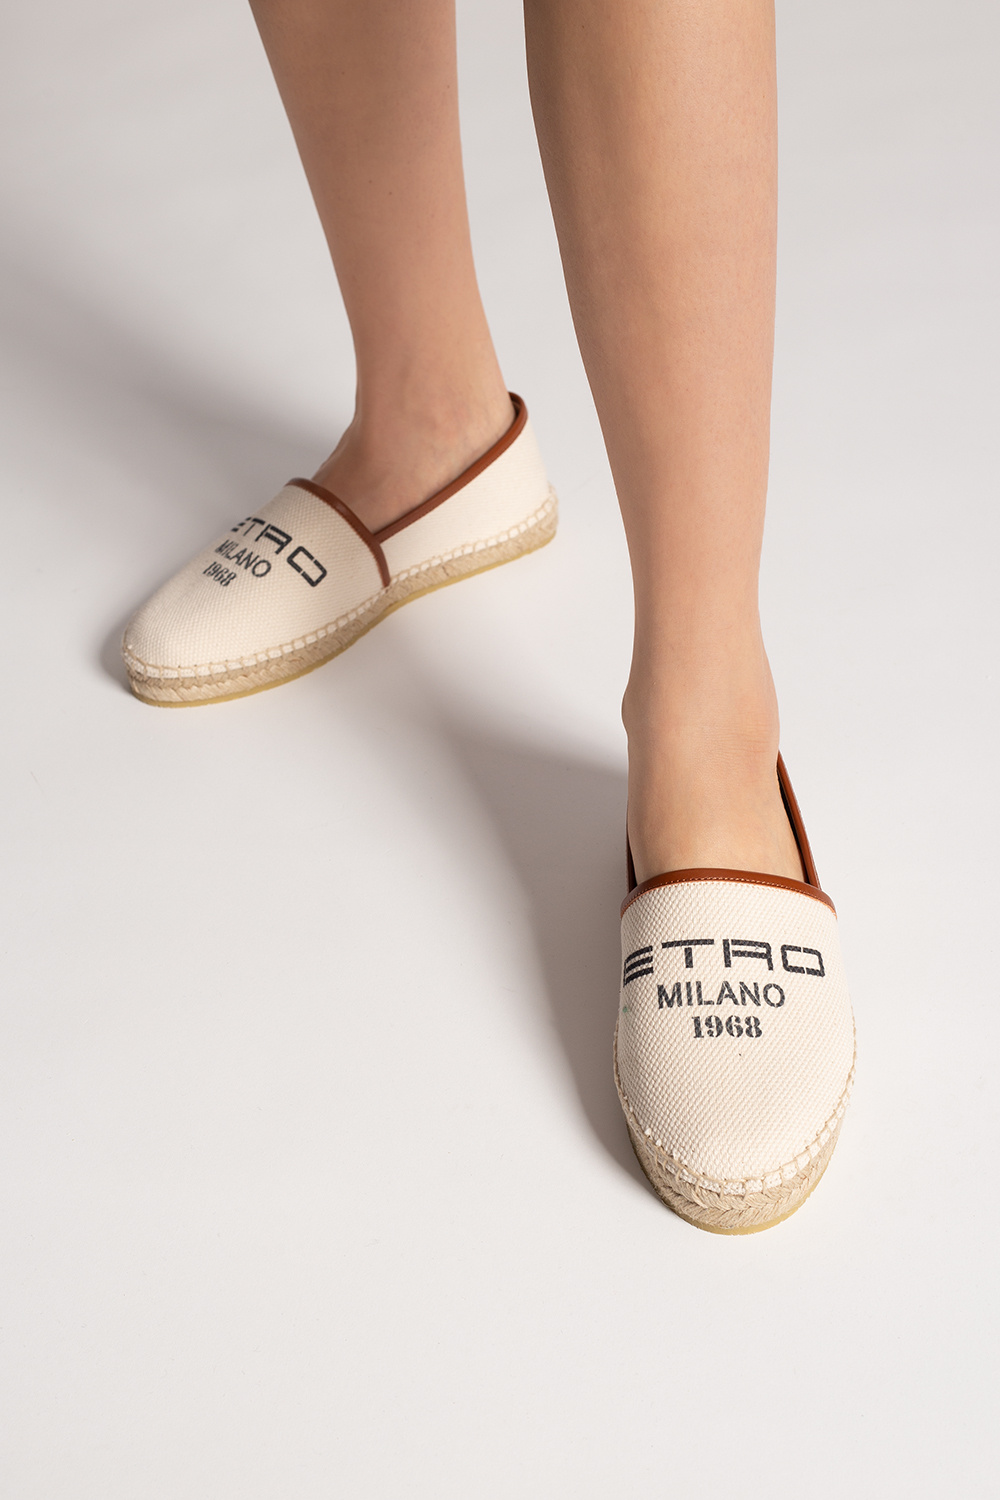 Etro Espadrilles with logo | Women's Shoes | IetpShops